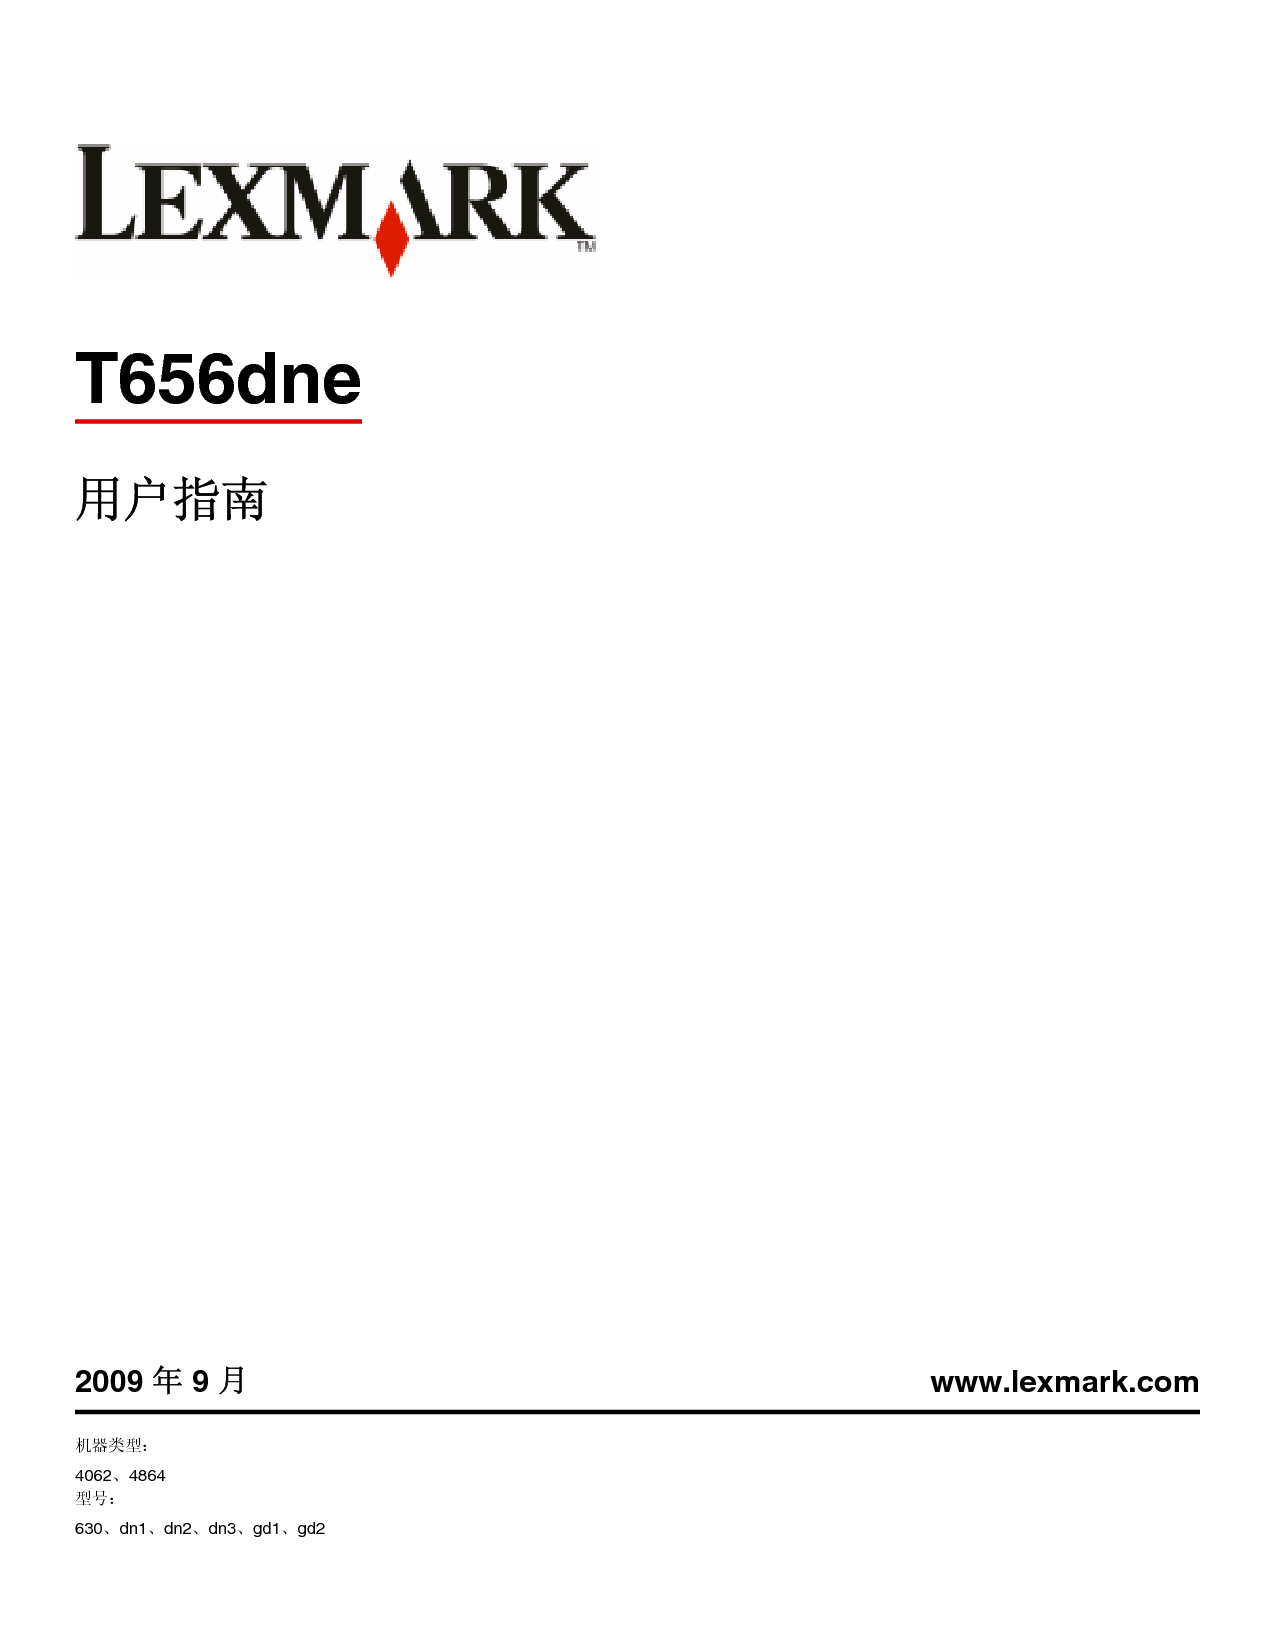 利盟 Lexmark T656dne 使用手册 封面